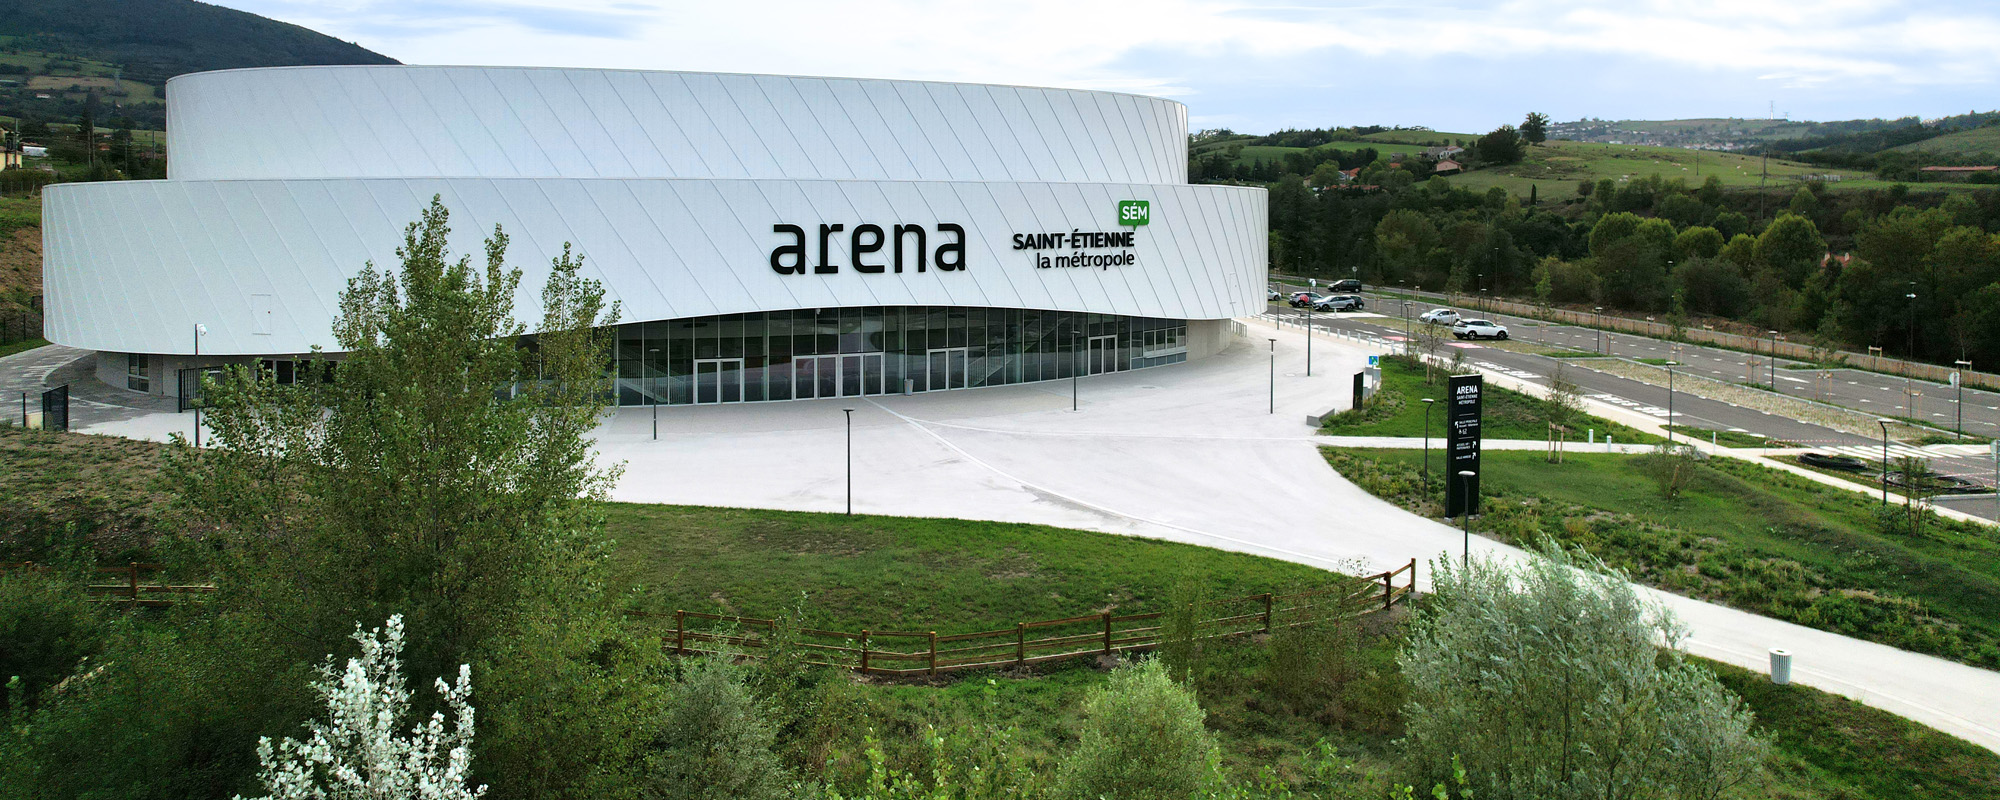 Arena Saint-Étienne Métropole